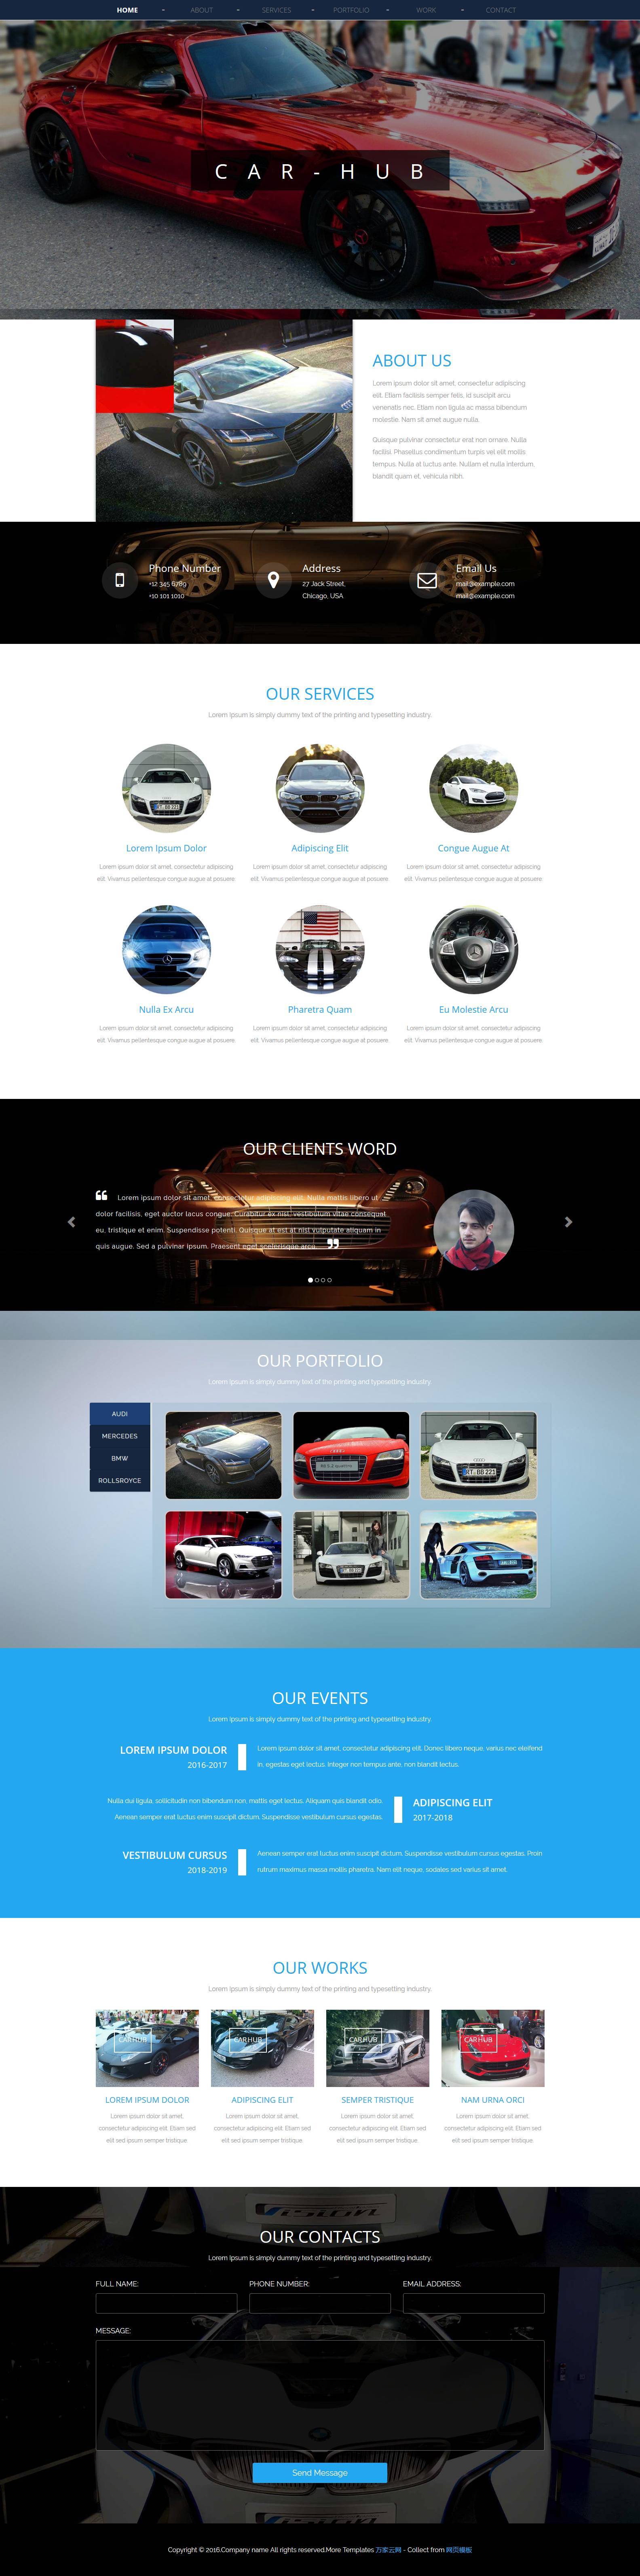 car hub汽车车展活动企业网站模板